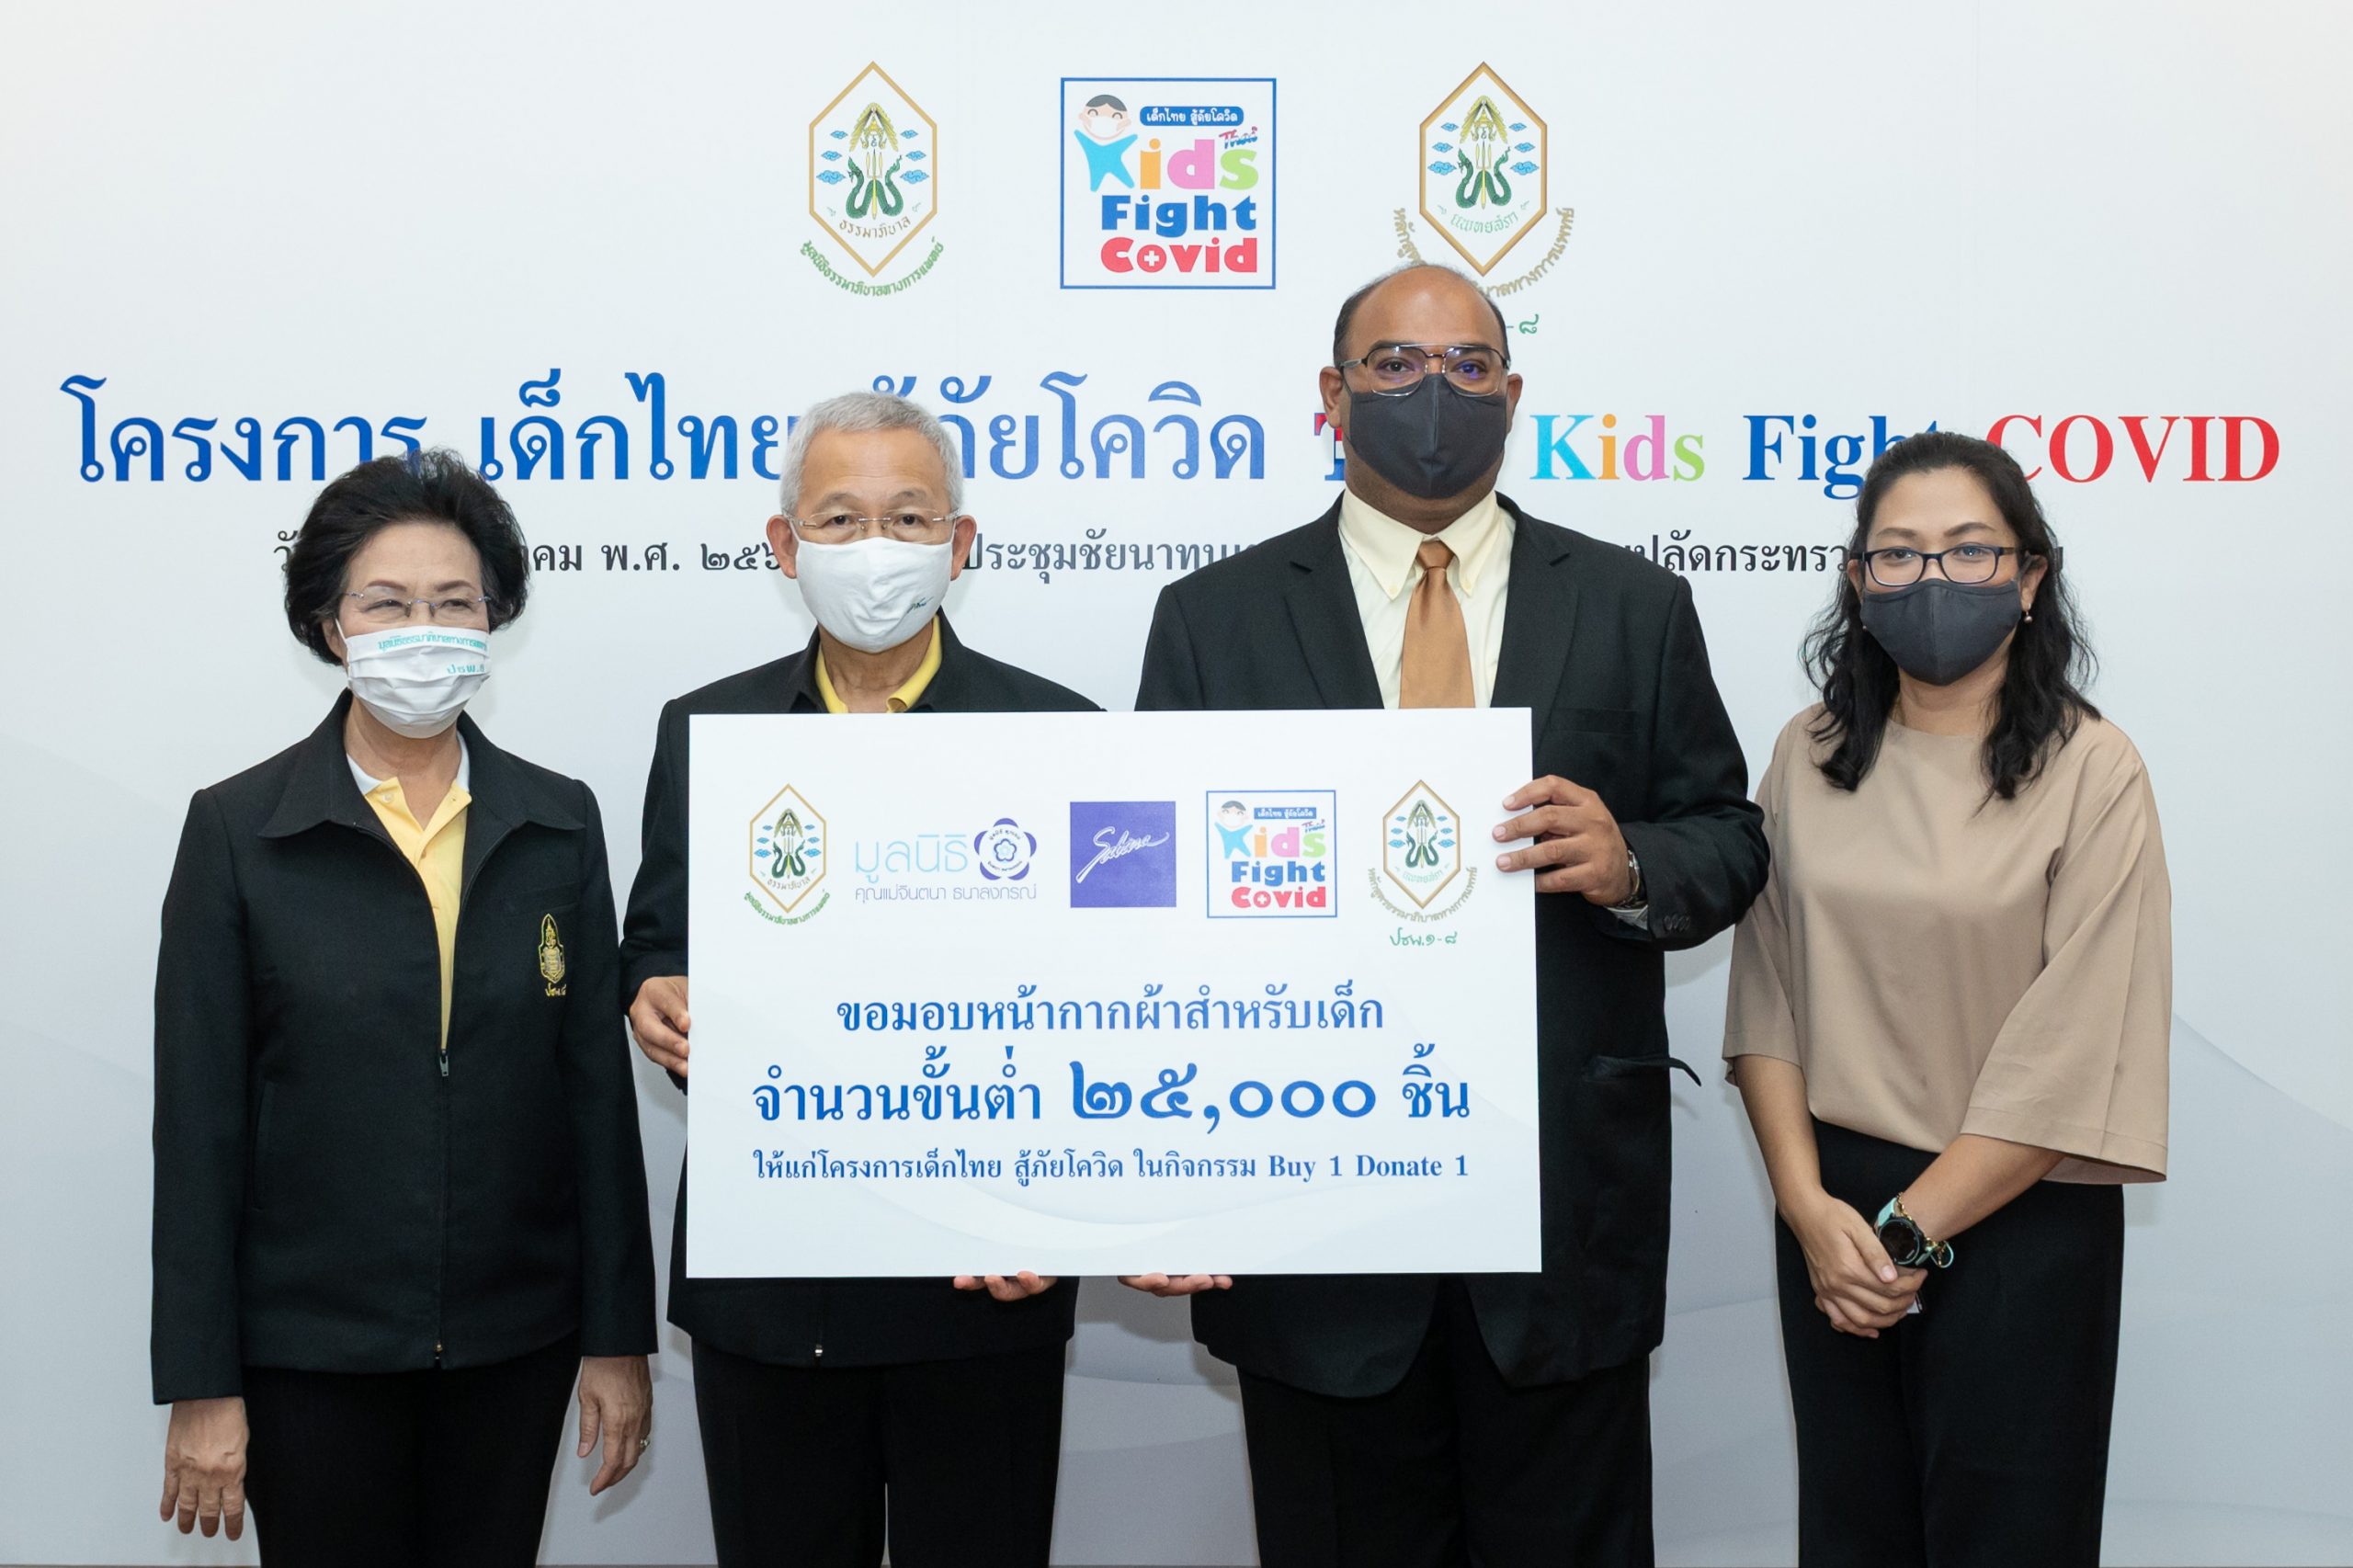 ภาพข่าว: ซาบีน่า ร่วมบริจาคหน้ากากผ้าส่งมอบให้เด็กที่ขาดแคลน ผ่านโครงการ เด็กไทยสู้ภัยโควิด